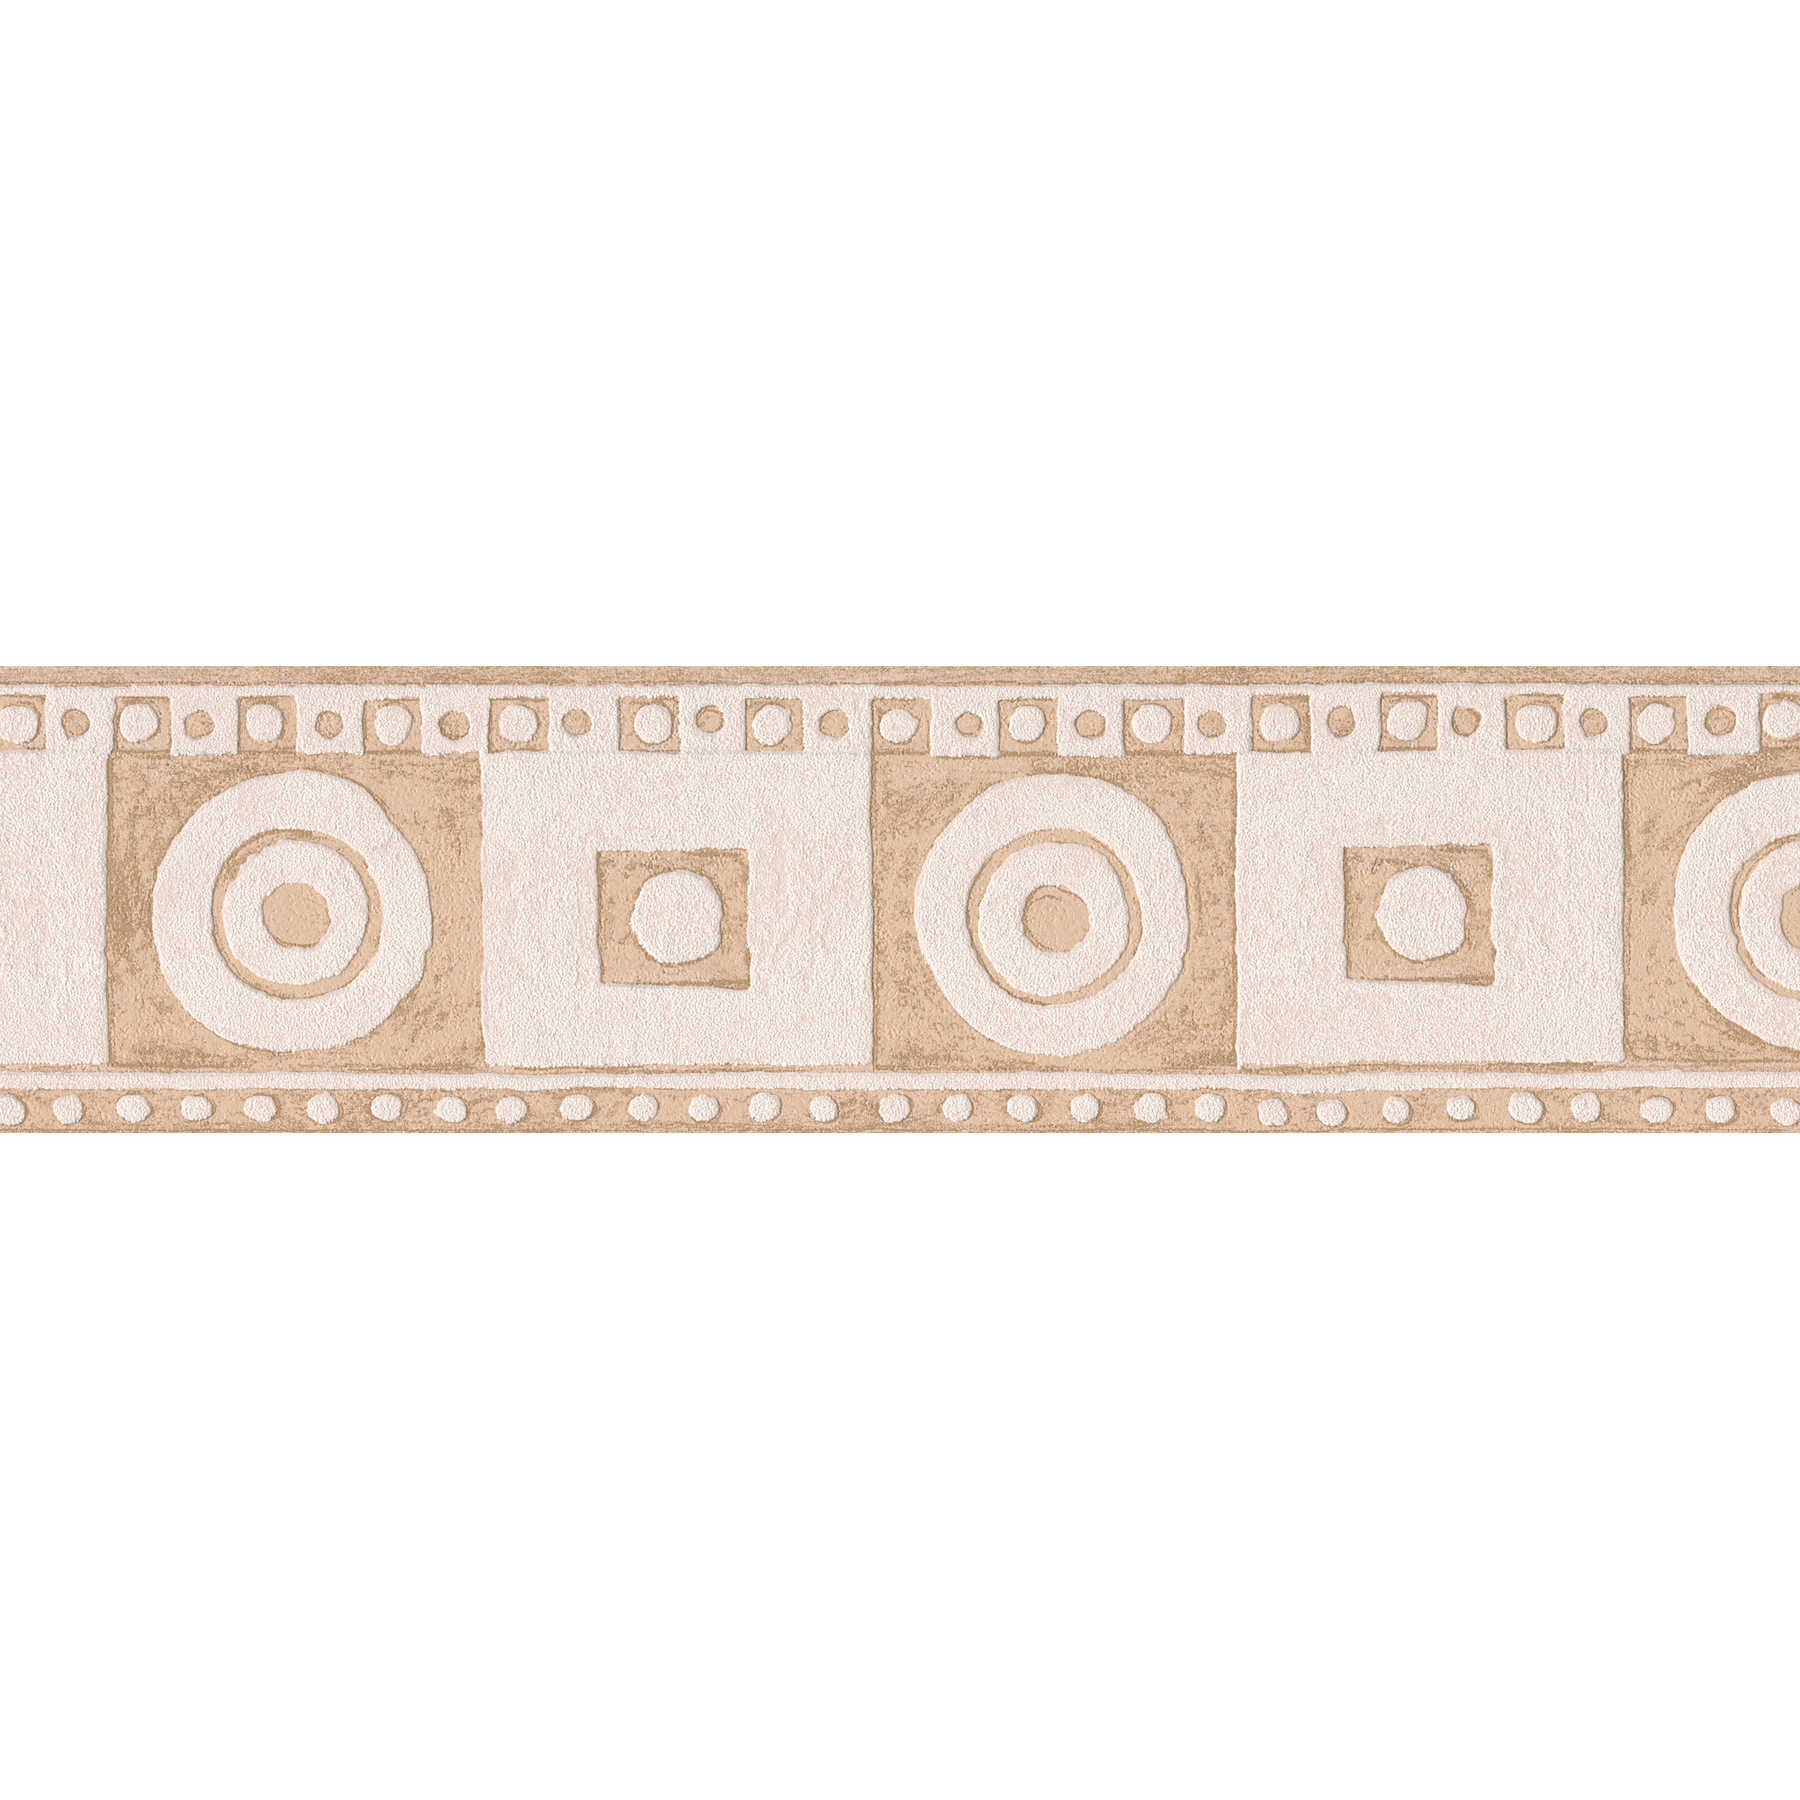 Bordo grafico in stile mediterraneo - Beige, crema
